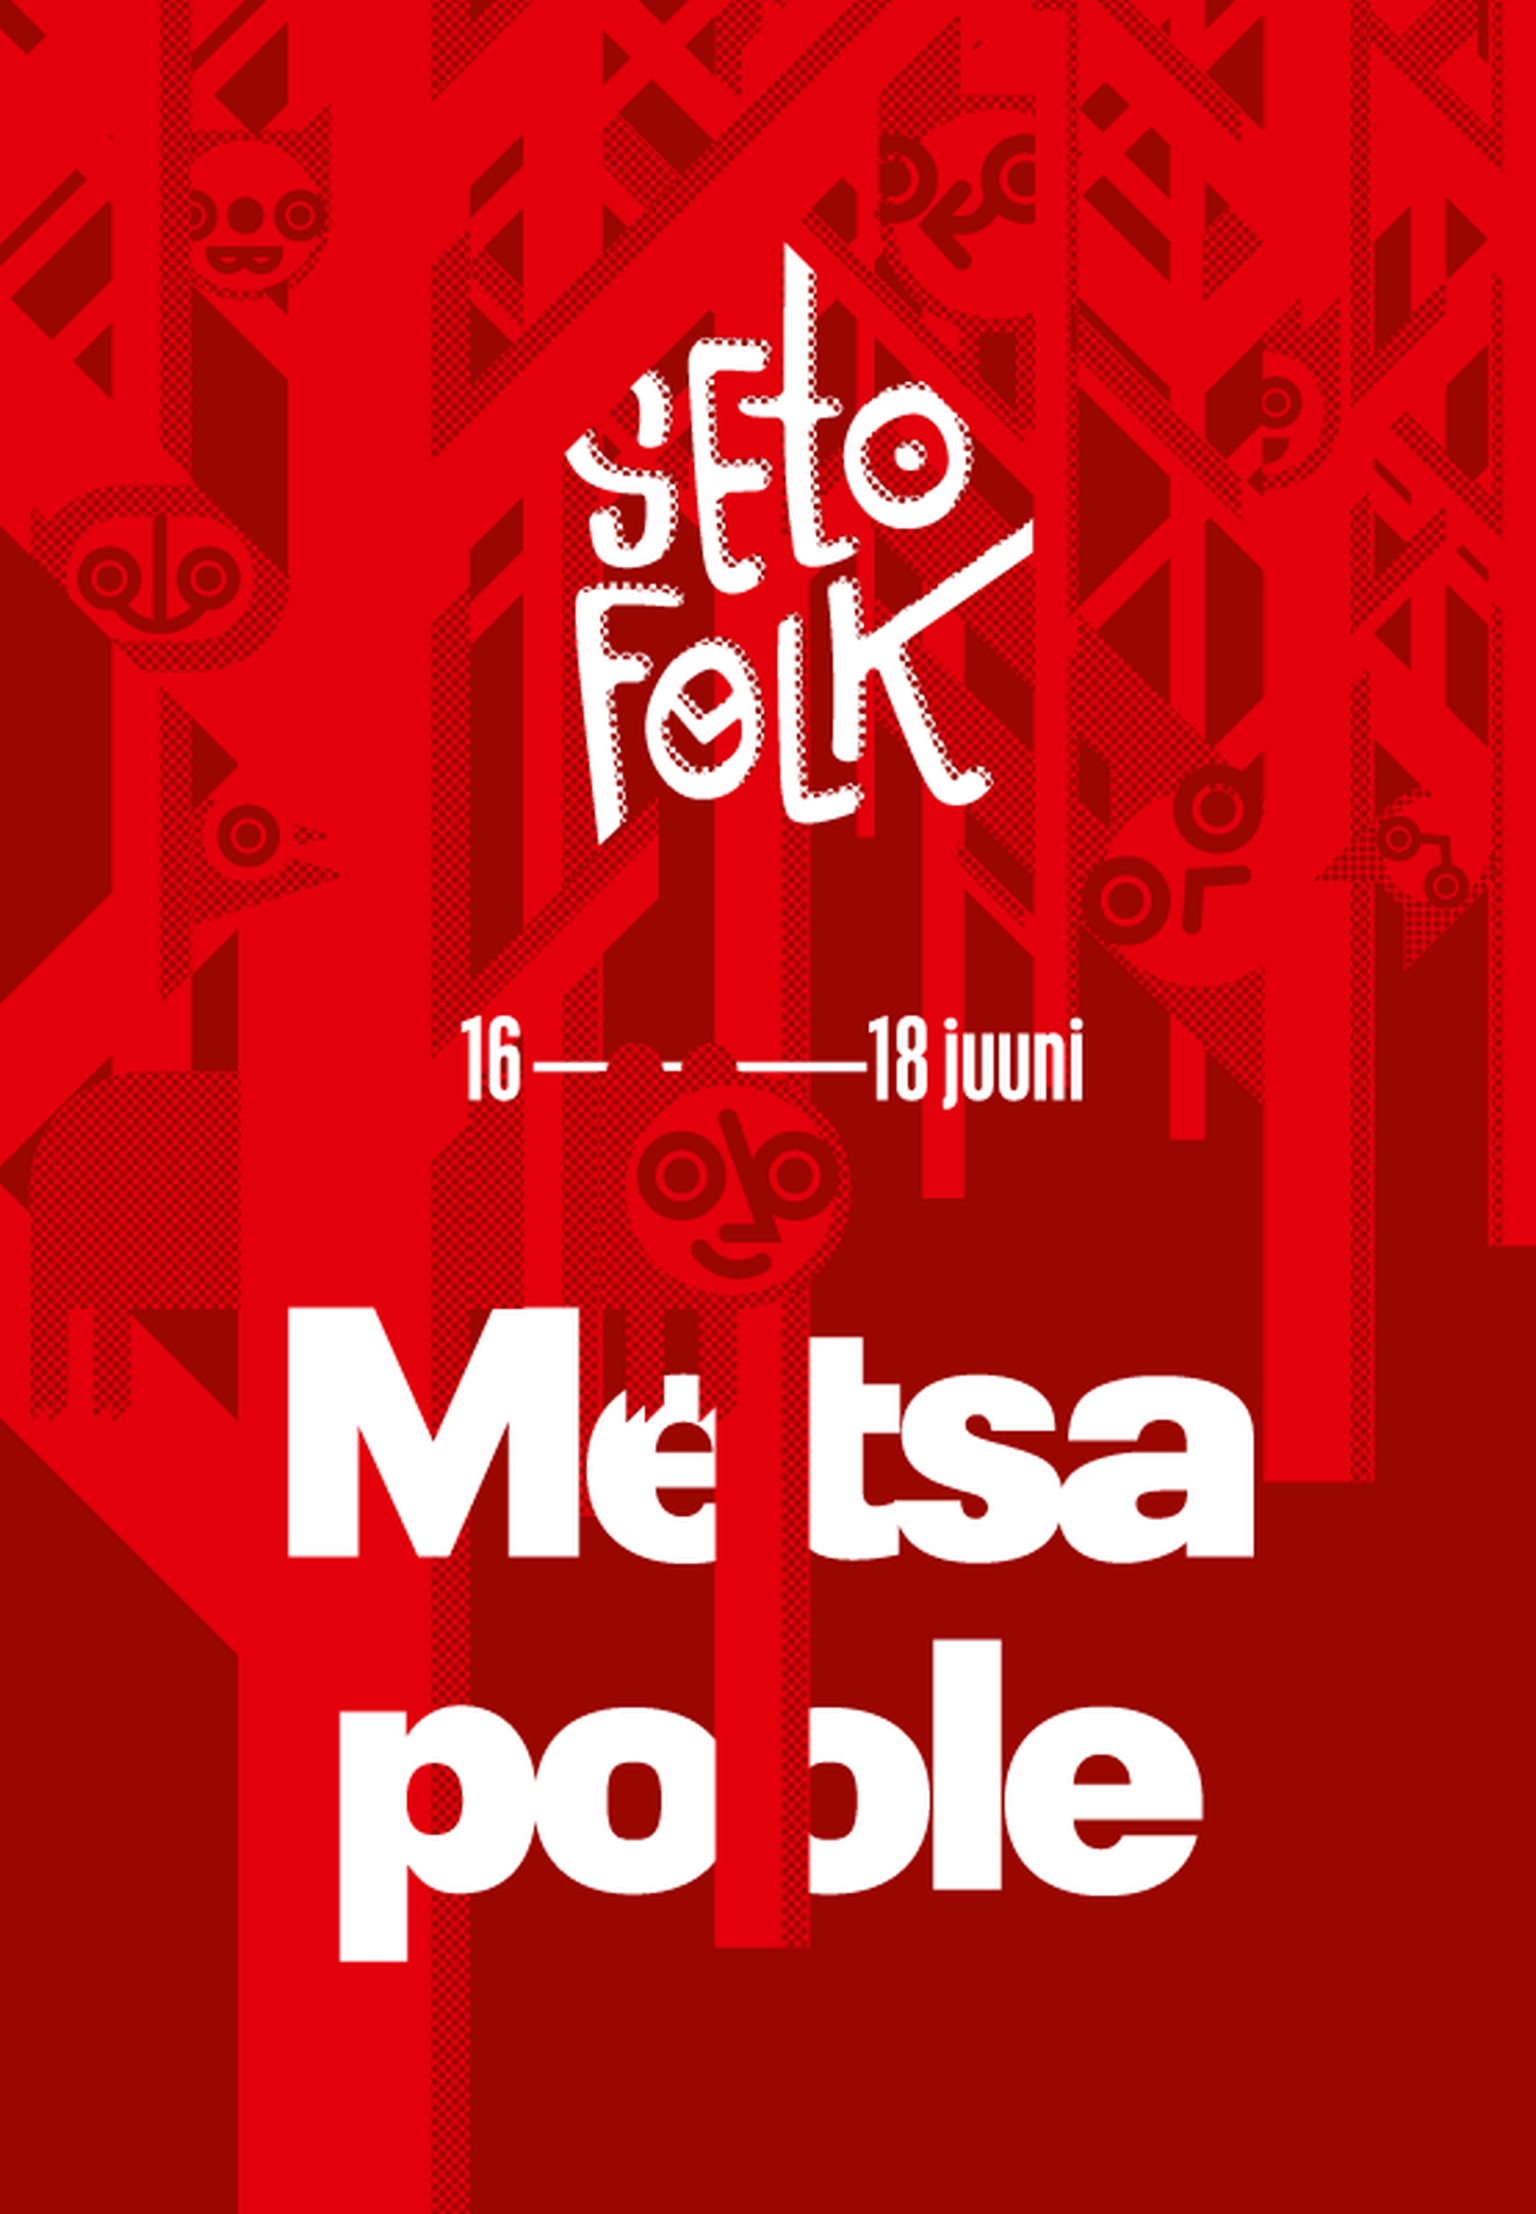 Seto Folk 16.-18.juuni 2017 Värskas